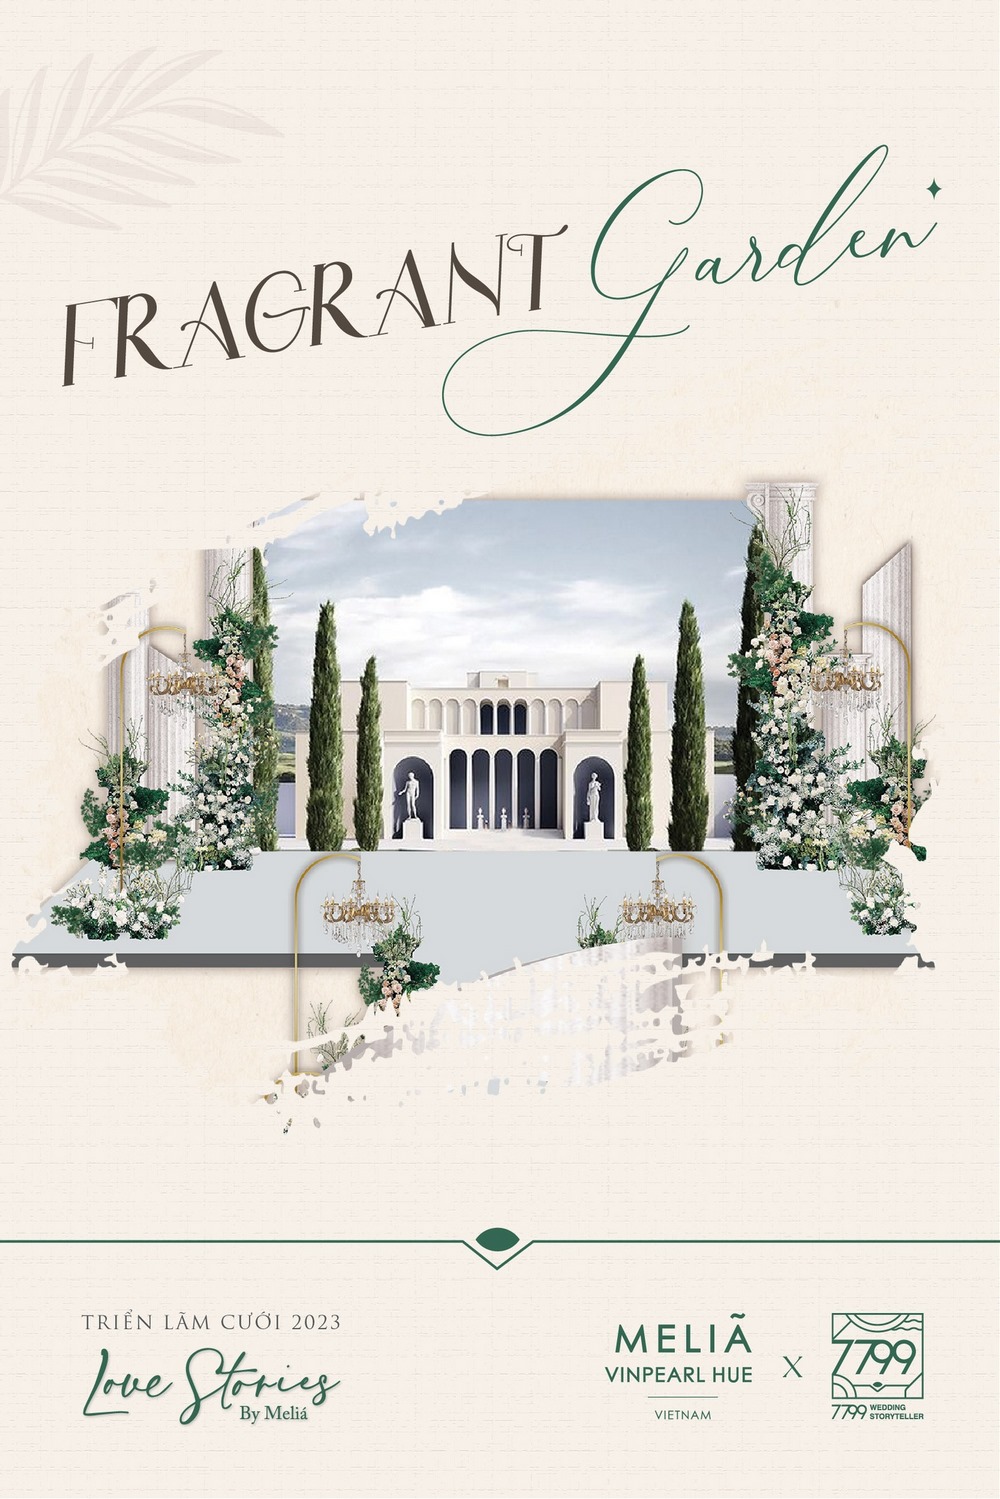 Concept The Fragrant Garden - Khu vườn của những thần thoại sẽ lần đầu xuất hiện tại Melia Vinpearl Hue 